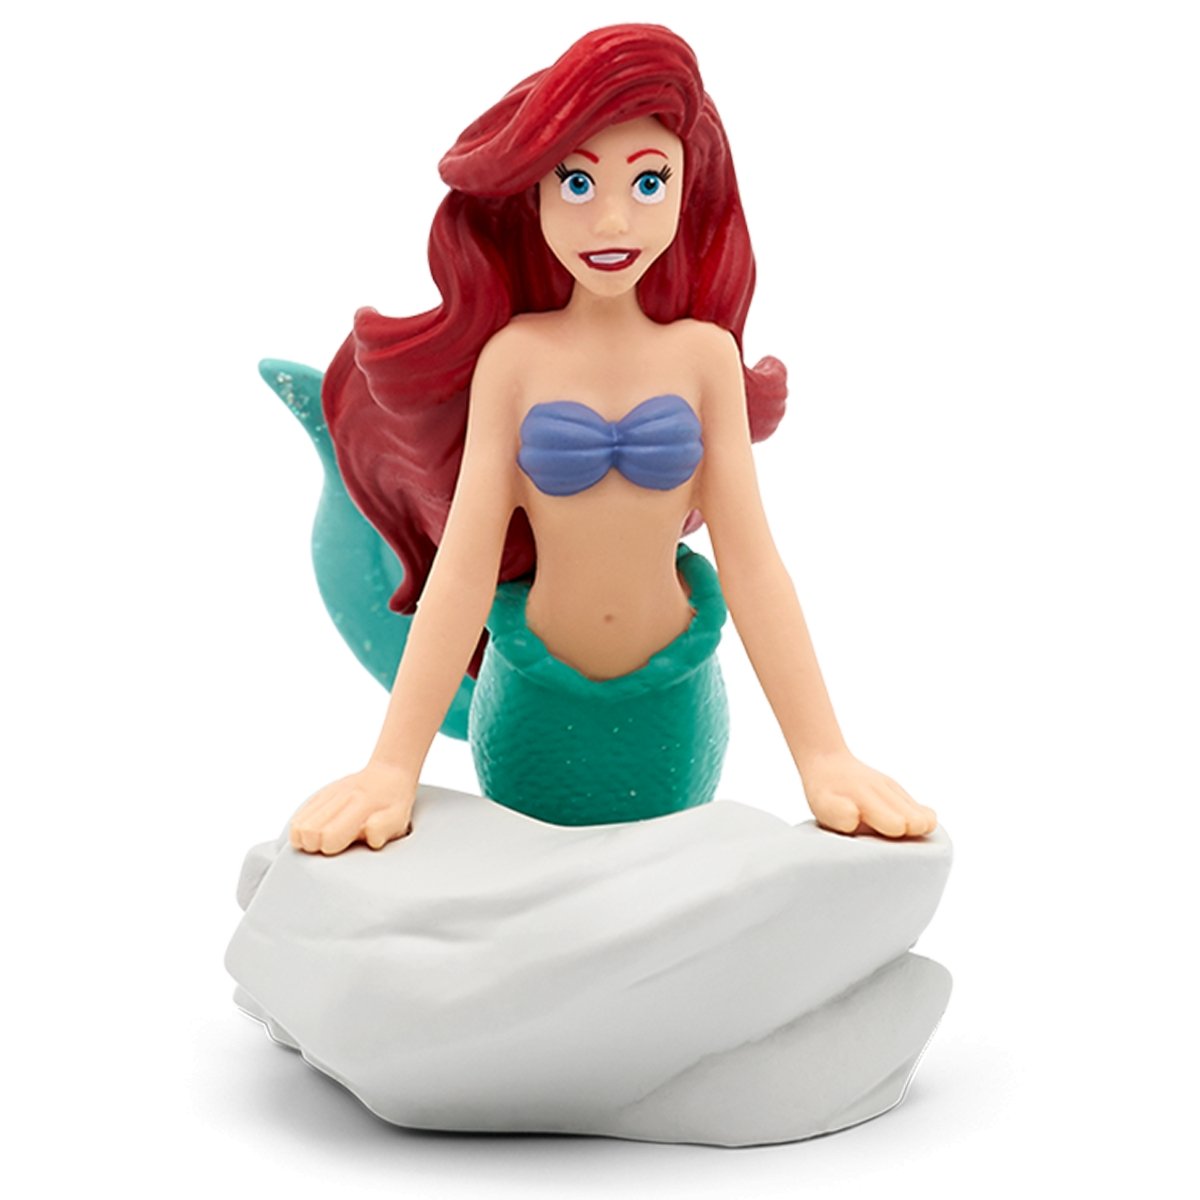 Tonies Disney Little Mermaid Audio Play Figurine - ANB Baby -840147400215Ariel the little mermaid